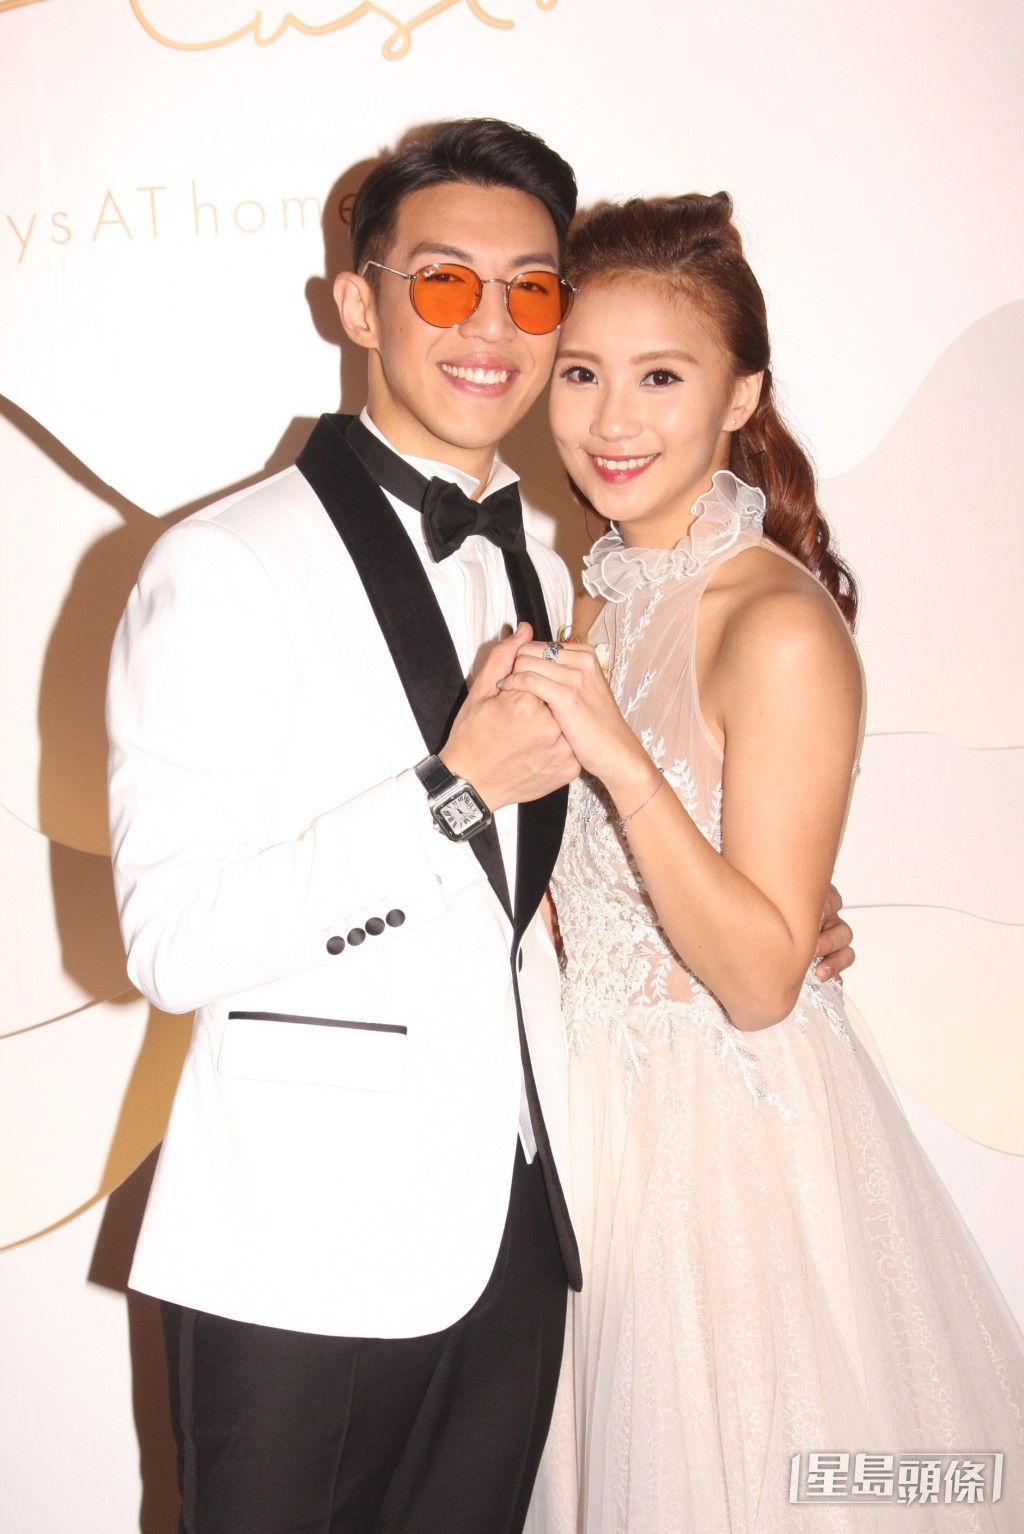 歐陽巧瑩與林師傑於2008年結婚。